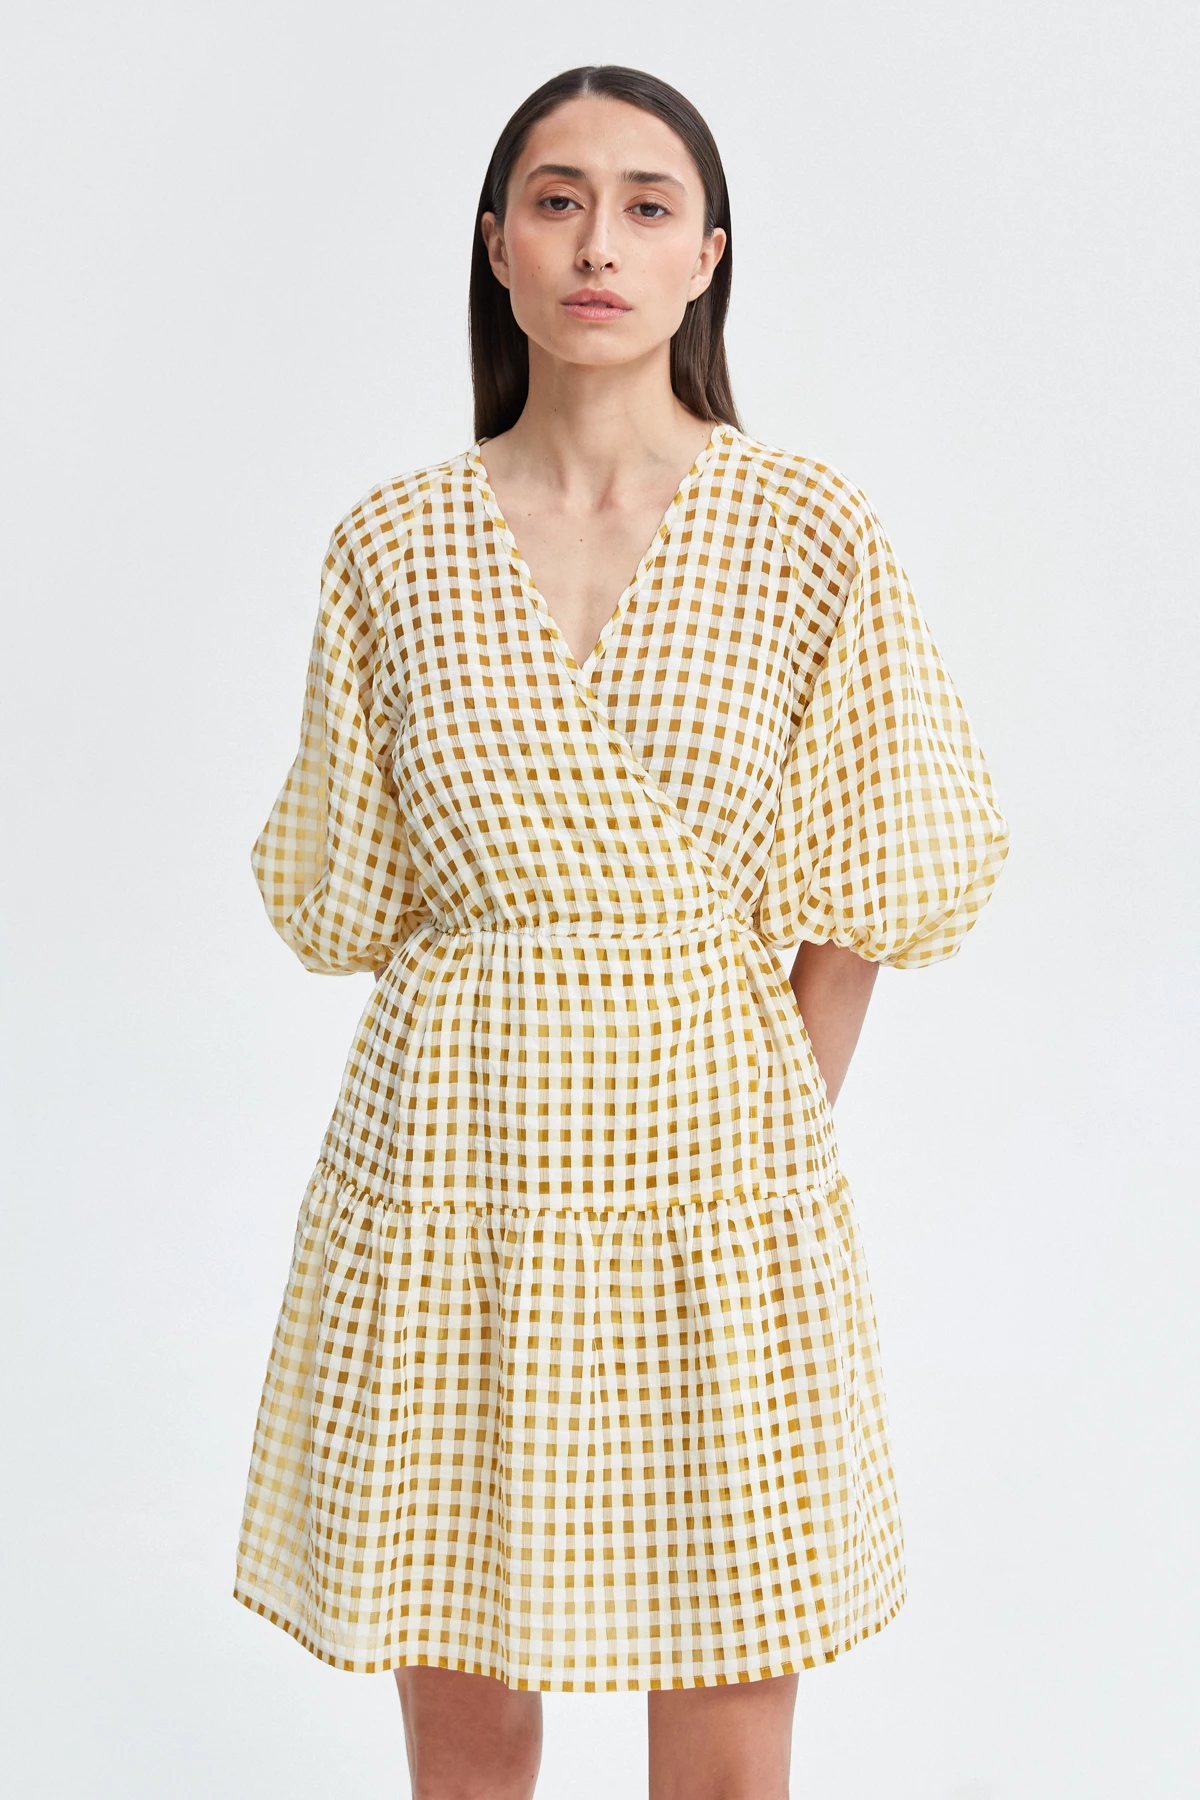 Checkered yellow chiffon dress, photo 2